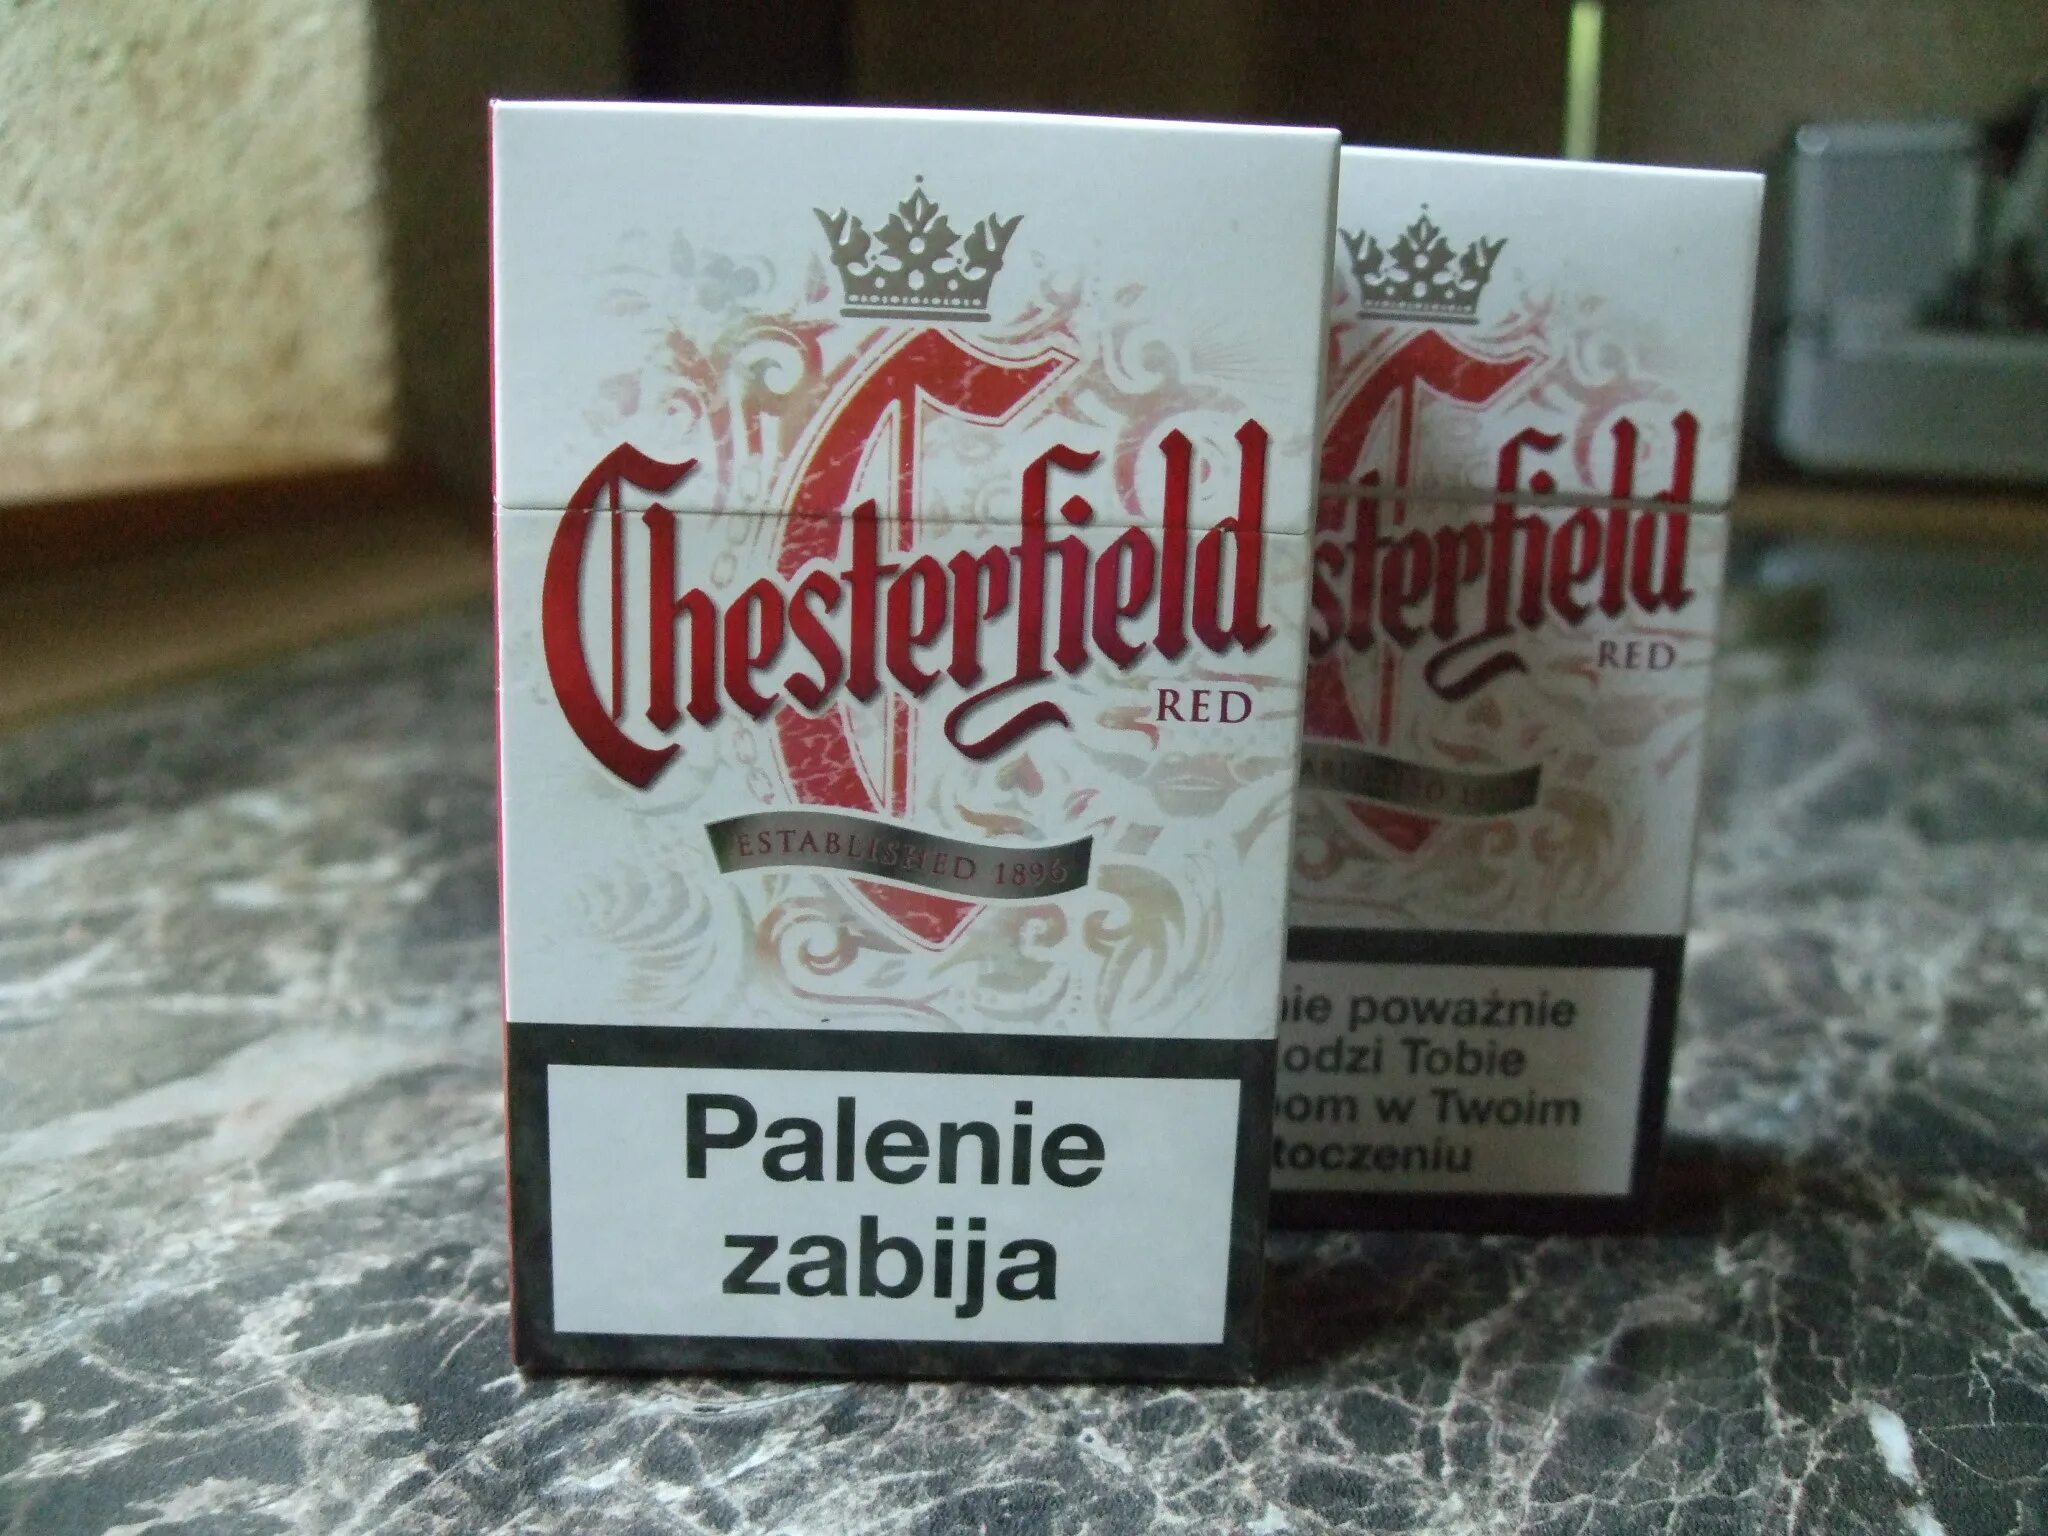 Сигареты Честерфилд компакт. Сигареты Честер компакт красный. Сигареты Честер Честерфилд. Chesterfield Compact красный.